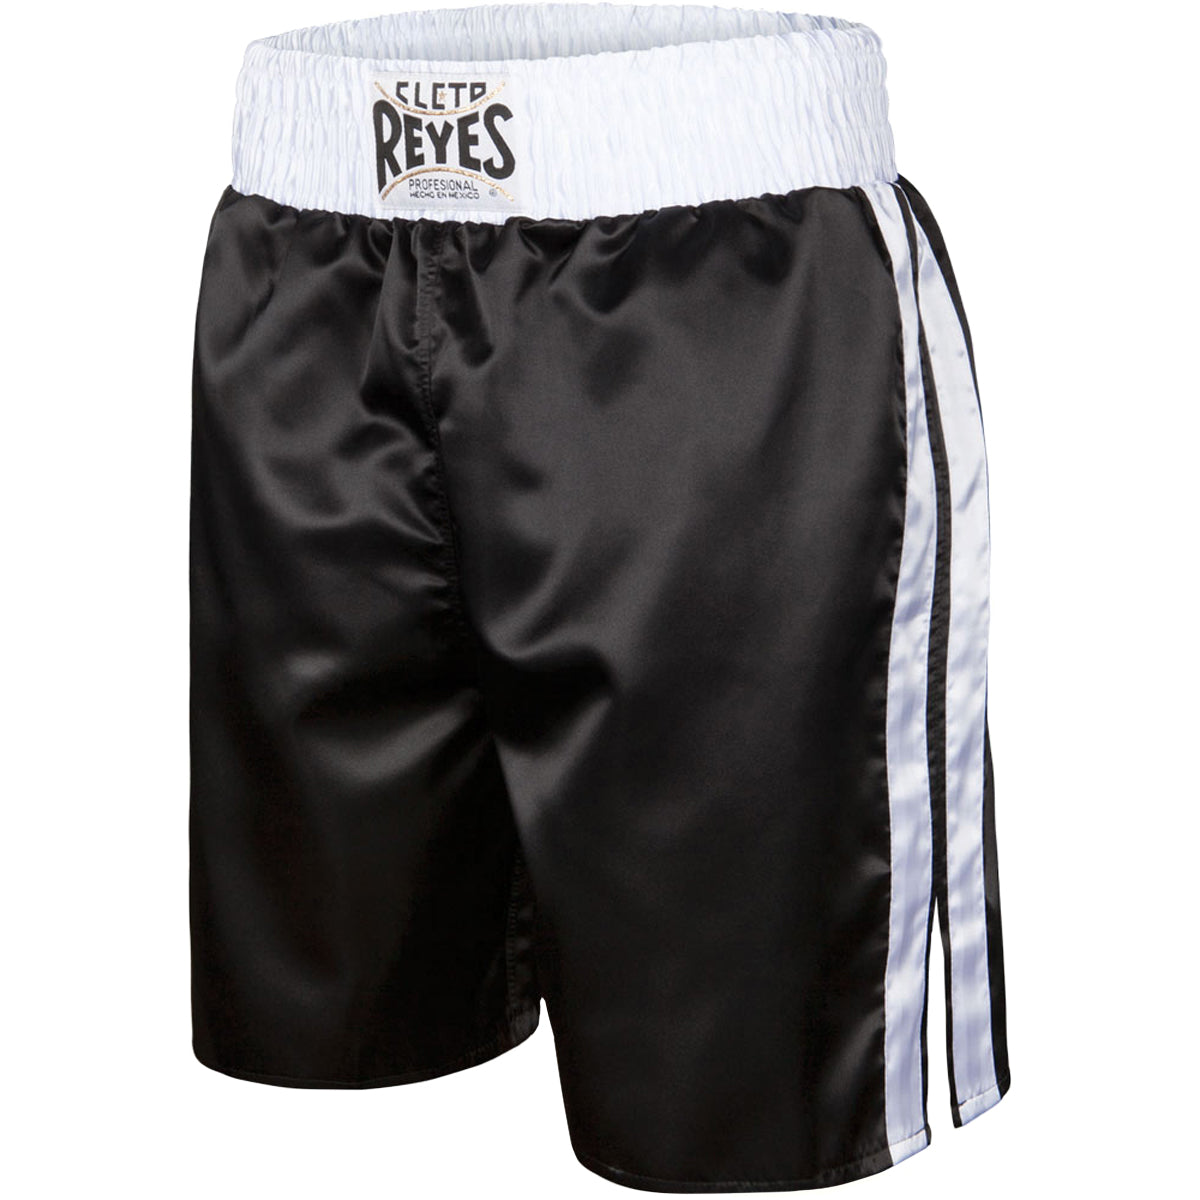 Cleto Reyes Satin Classic Boxing Trunks - XL (44") - Black/White Cleto Reyes